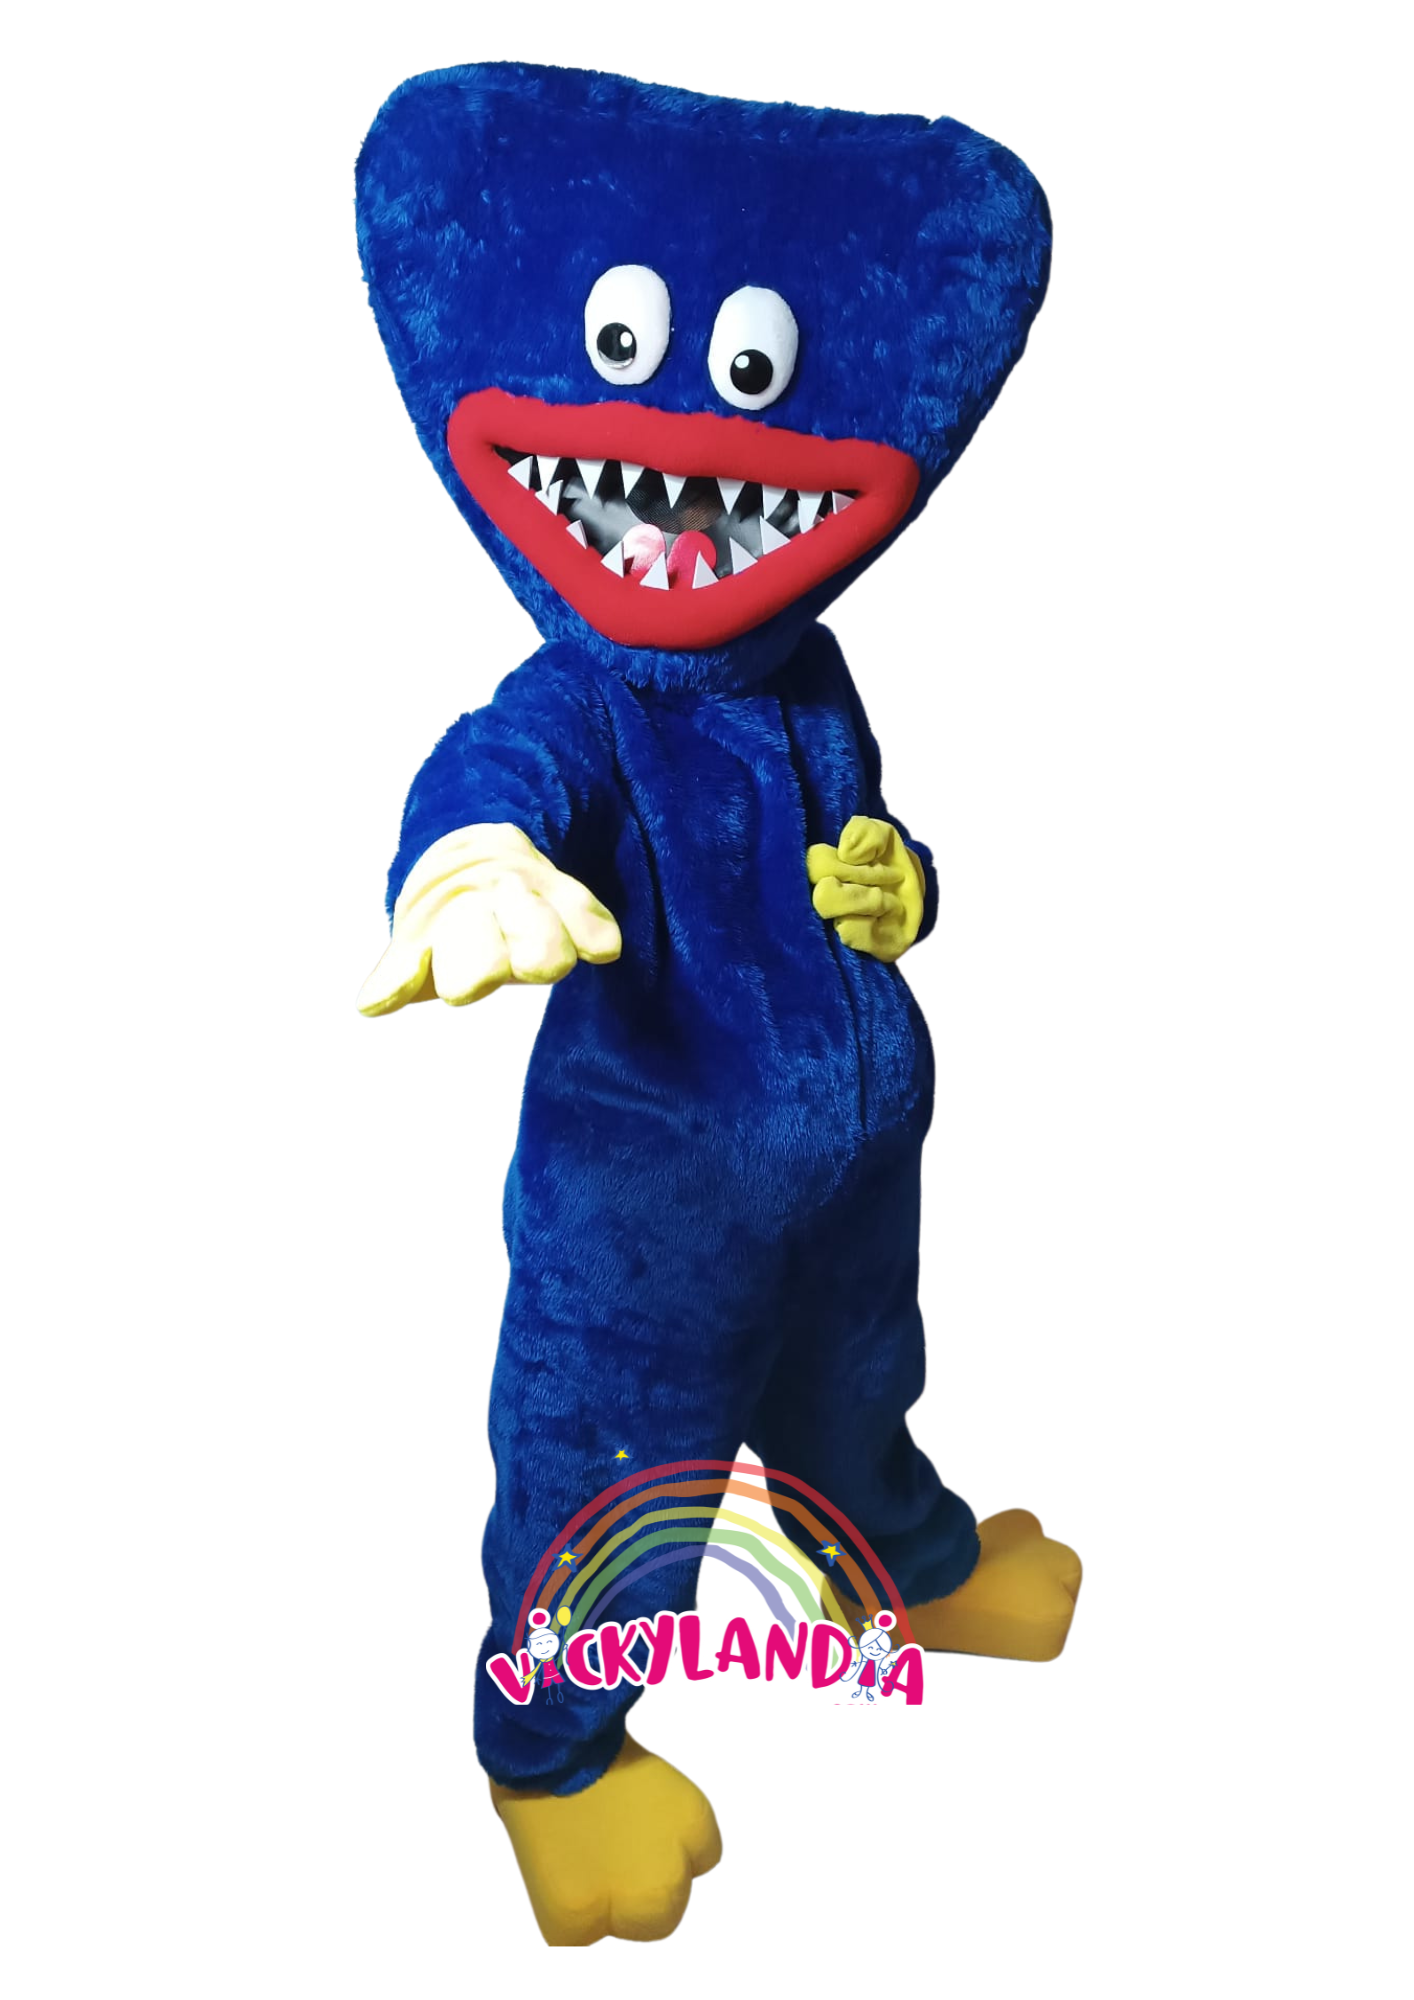 Descubre la magia de nuestro muñeco publicitario de Monstruo de Pesadillas en Vickylandia. Son disfraces cabezones perfectos para fiestas infantiles, shows, cumpleaños, estrategias publicitarias, espectáculos, cabalgatas y cualquier tipo de evento.